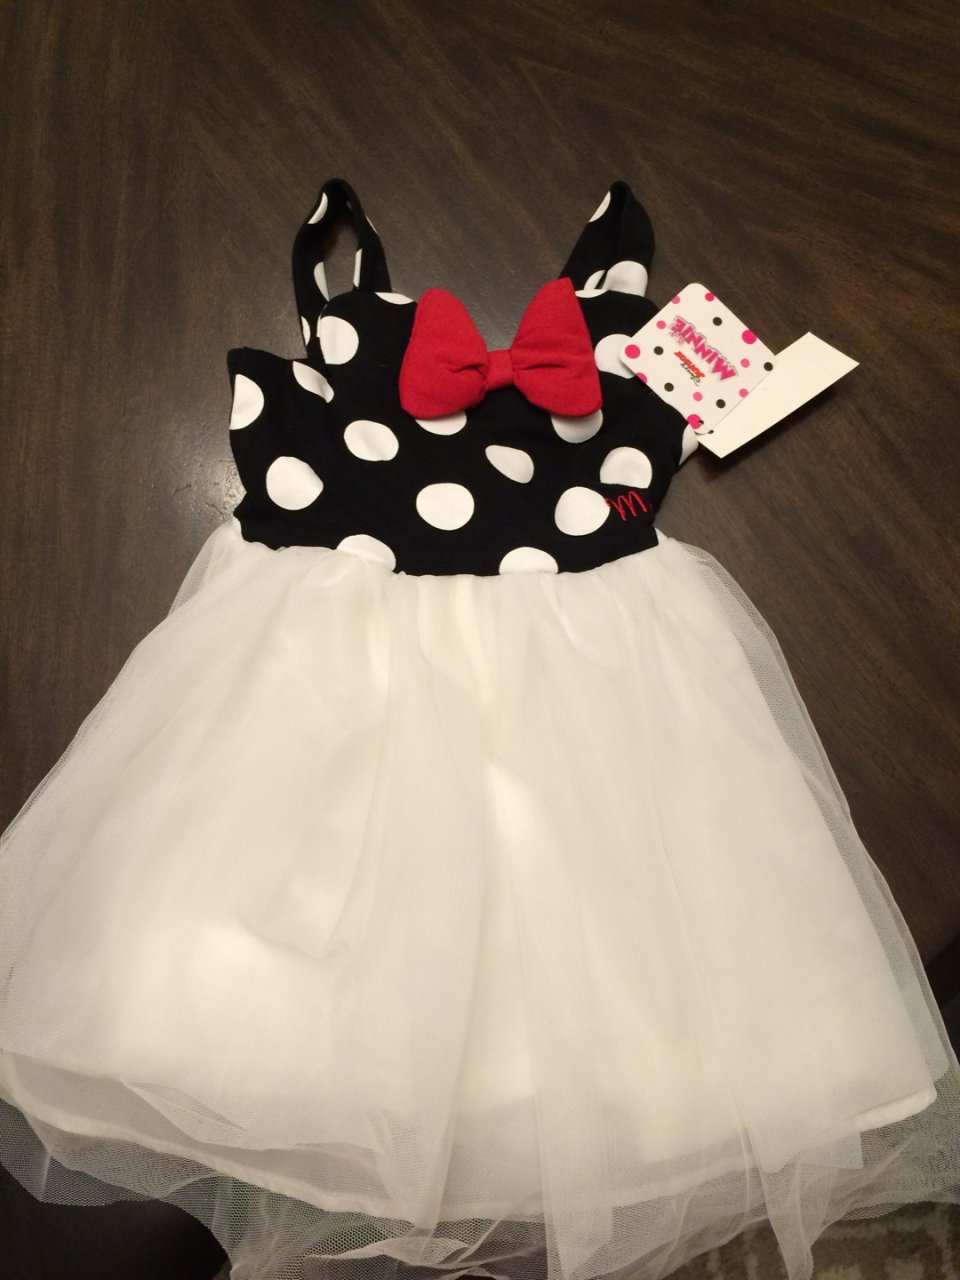 5月晒货挑战,母婴儿童,Macy's 梅西百货,裙子,Disney 迪士尼